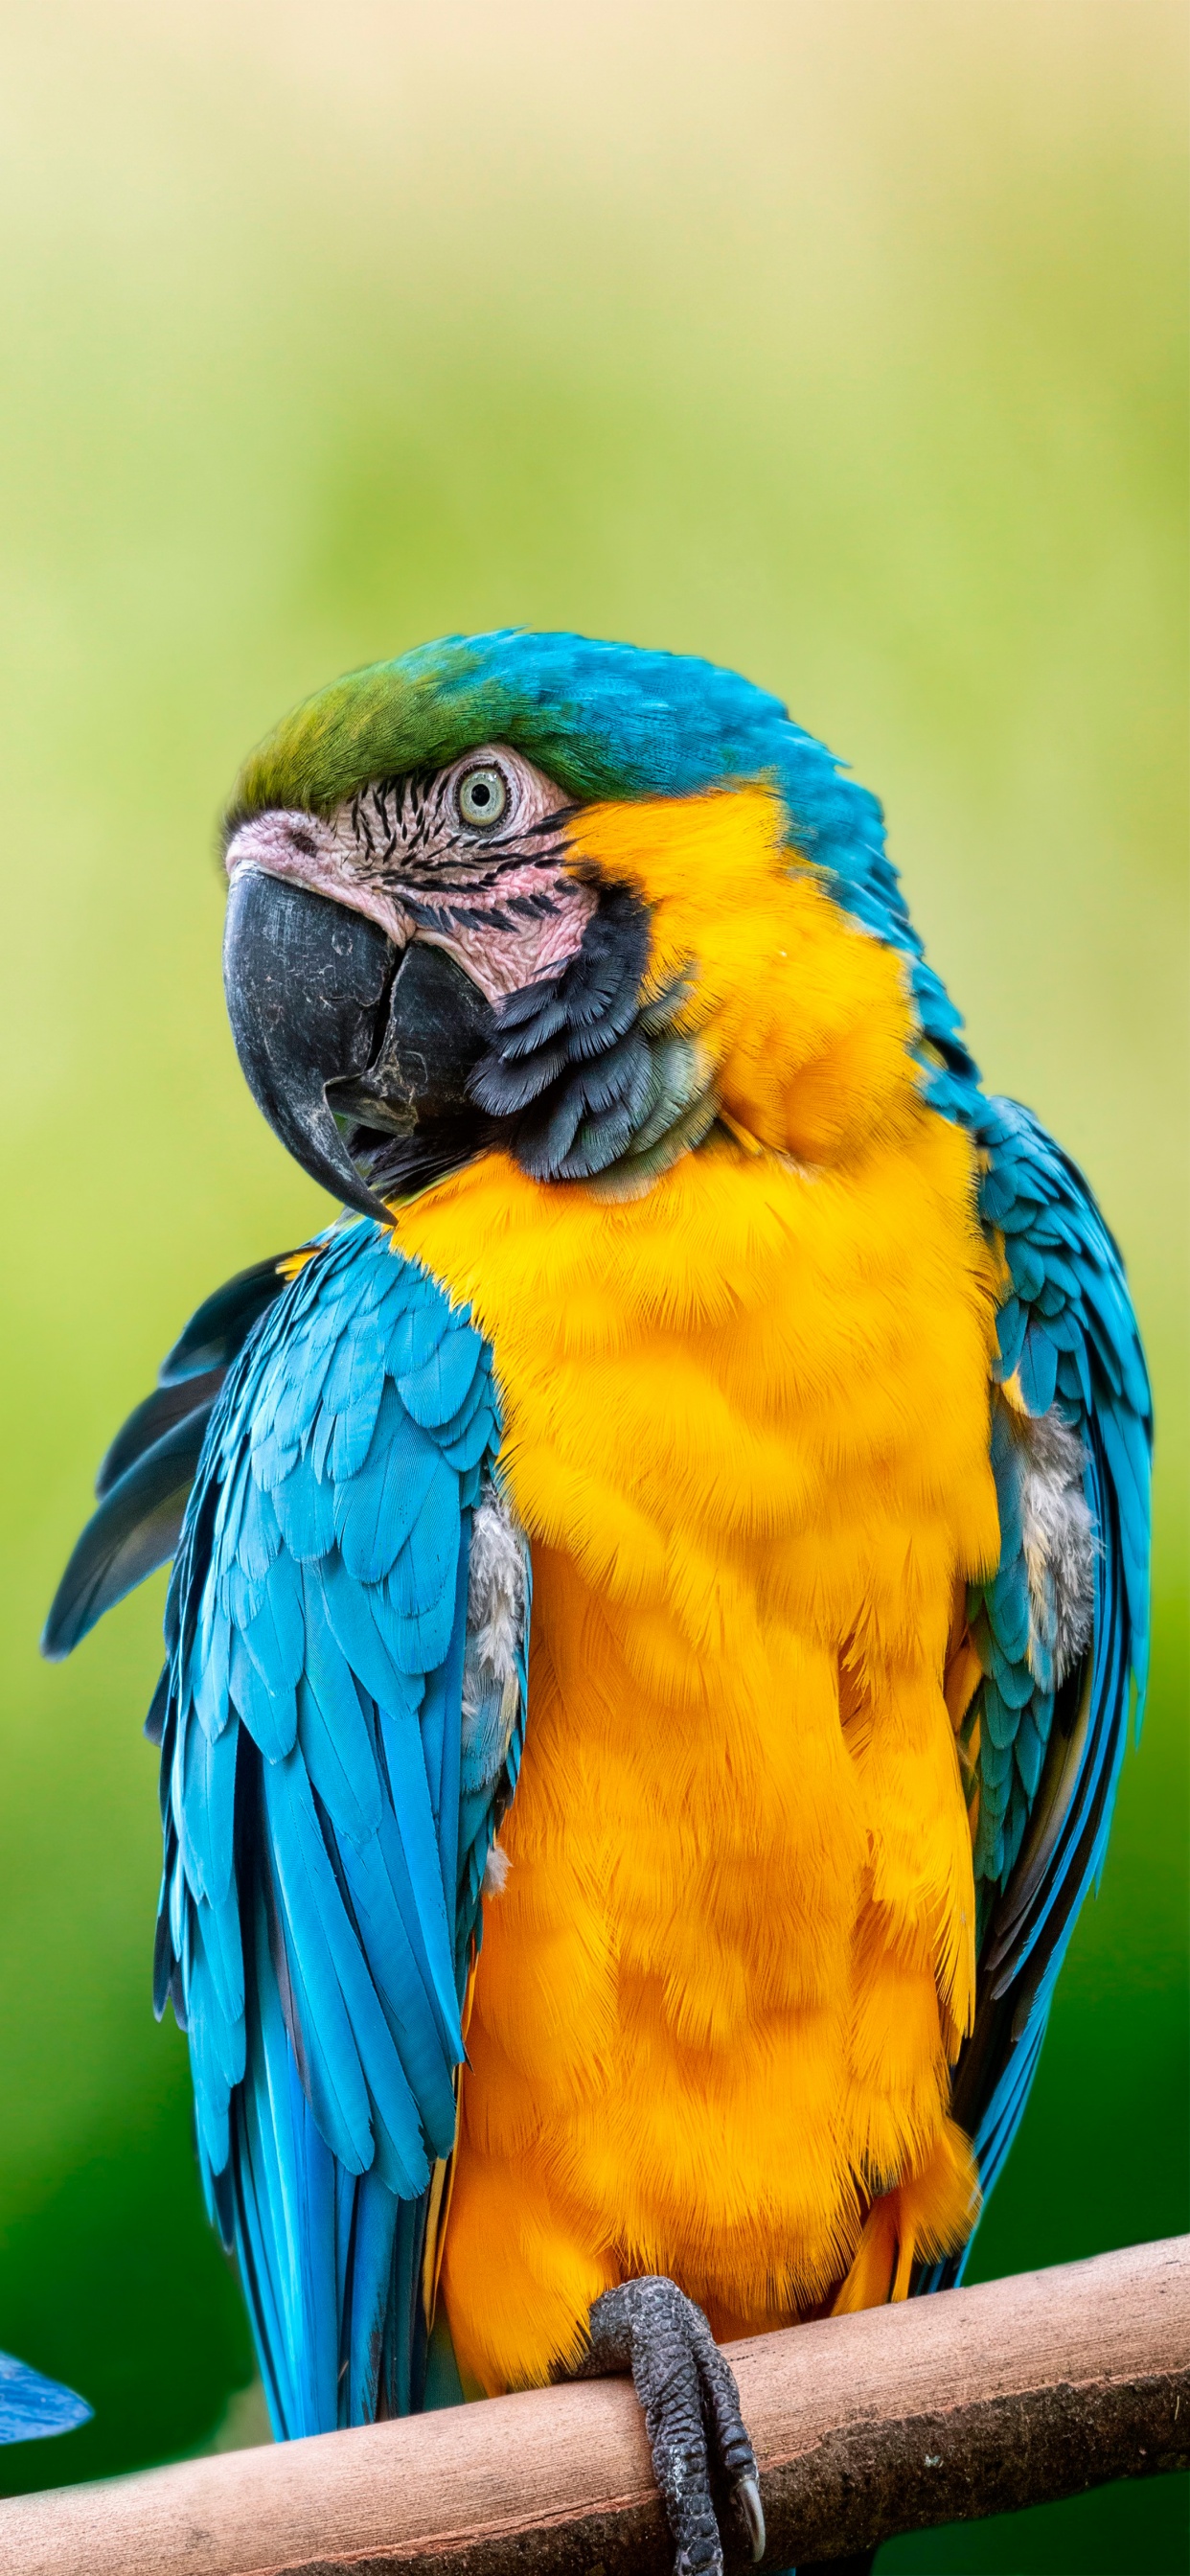 Rasch Tropical Exotic Parrot Wallpaper Jungle Bird Palm Leaf Green Cream  439533